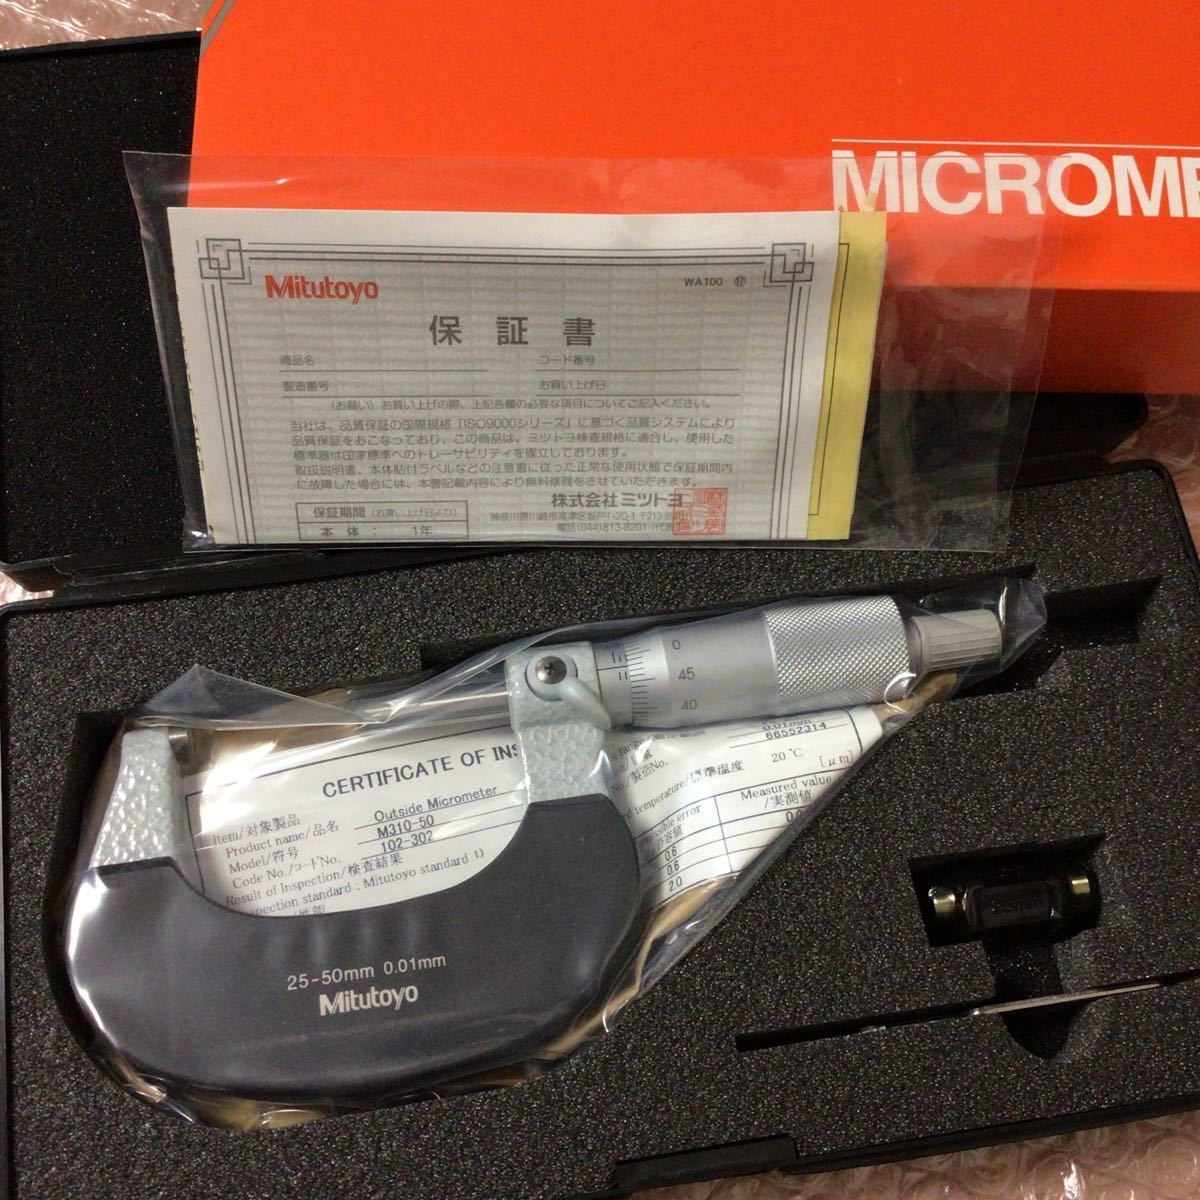 ミツトヨ 25~ 50mm 標準 外側 マイクロメータ M310-50 Mitutoyo 102-302 アナログ マイクロメーター 未使用品の画像2